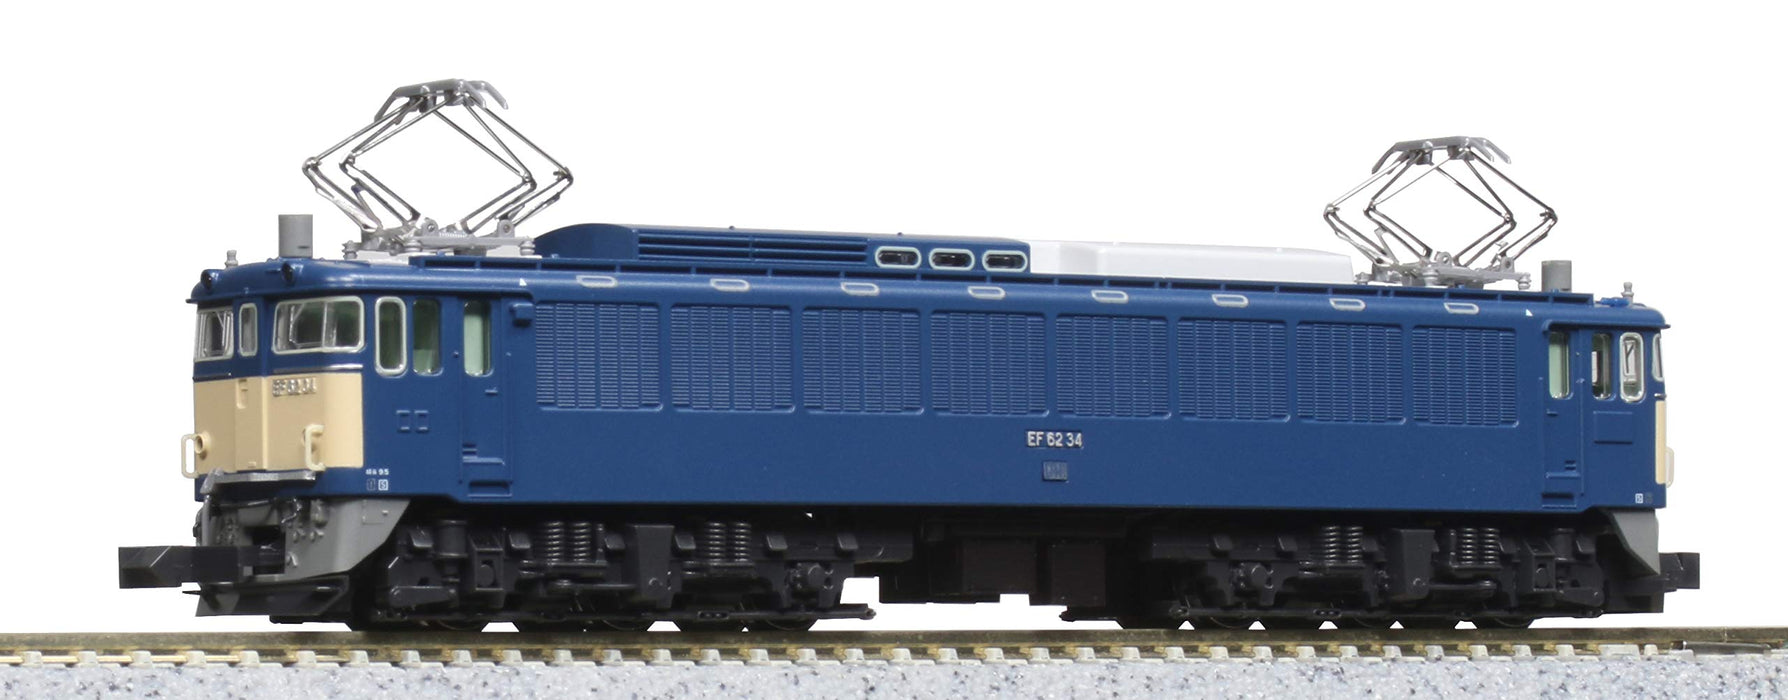 Kato N Gauge EF62 Late Type Electric Locomotive Railway Model 3058-3